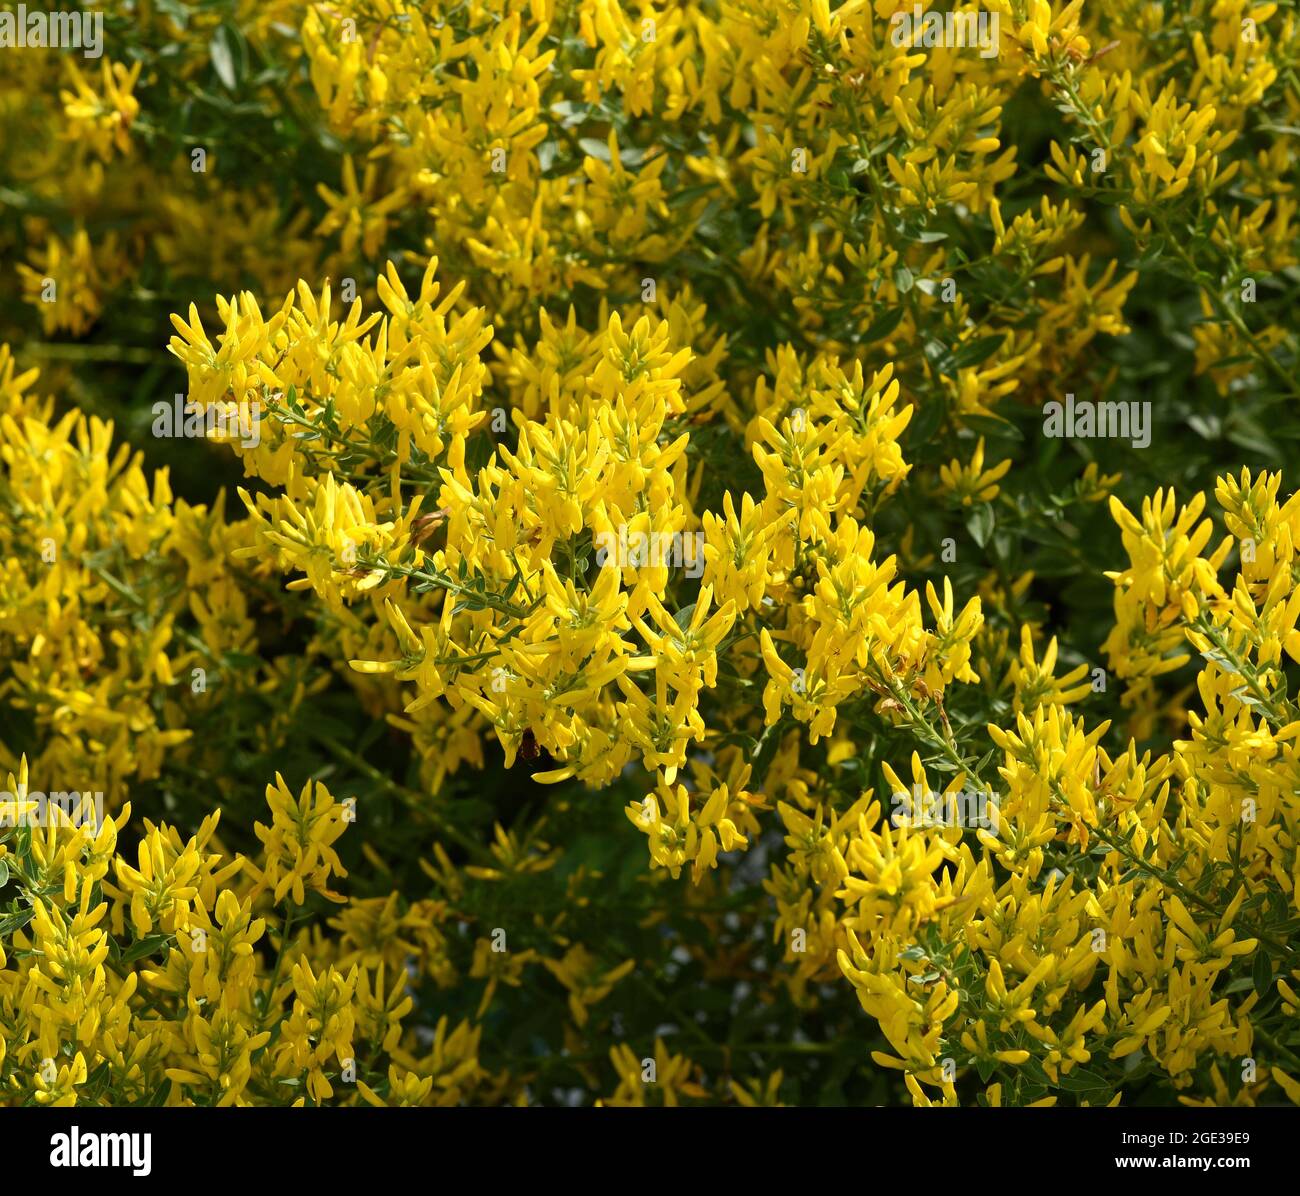 Faerberginster, Genista tinctoria, ist eine wichtige Heilpflanze mit gelben Blueten und wird viel in der Medizin verwendet. Sie ist eine Staude und ge Banque D'Images